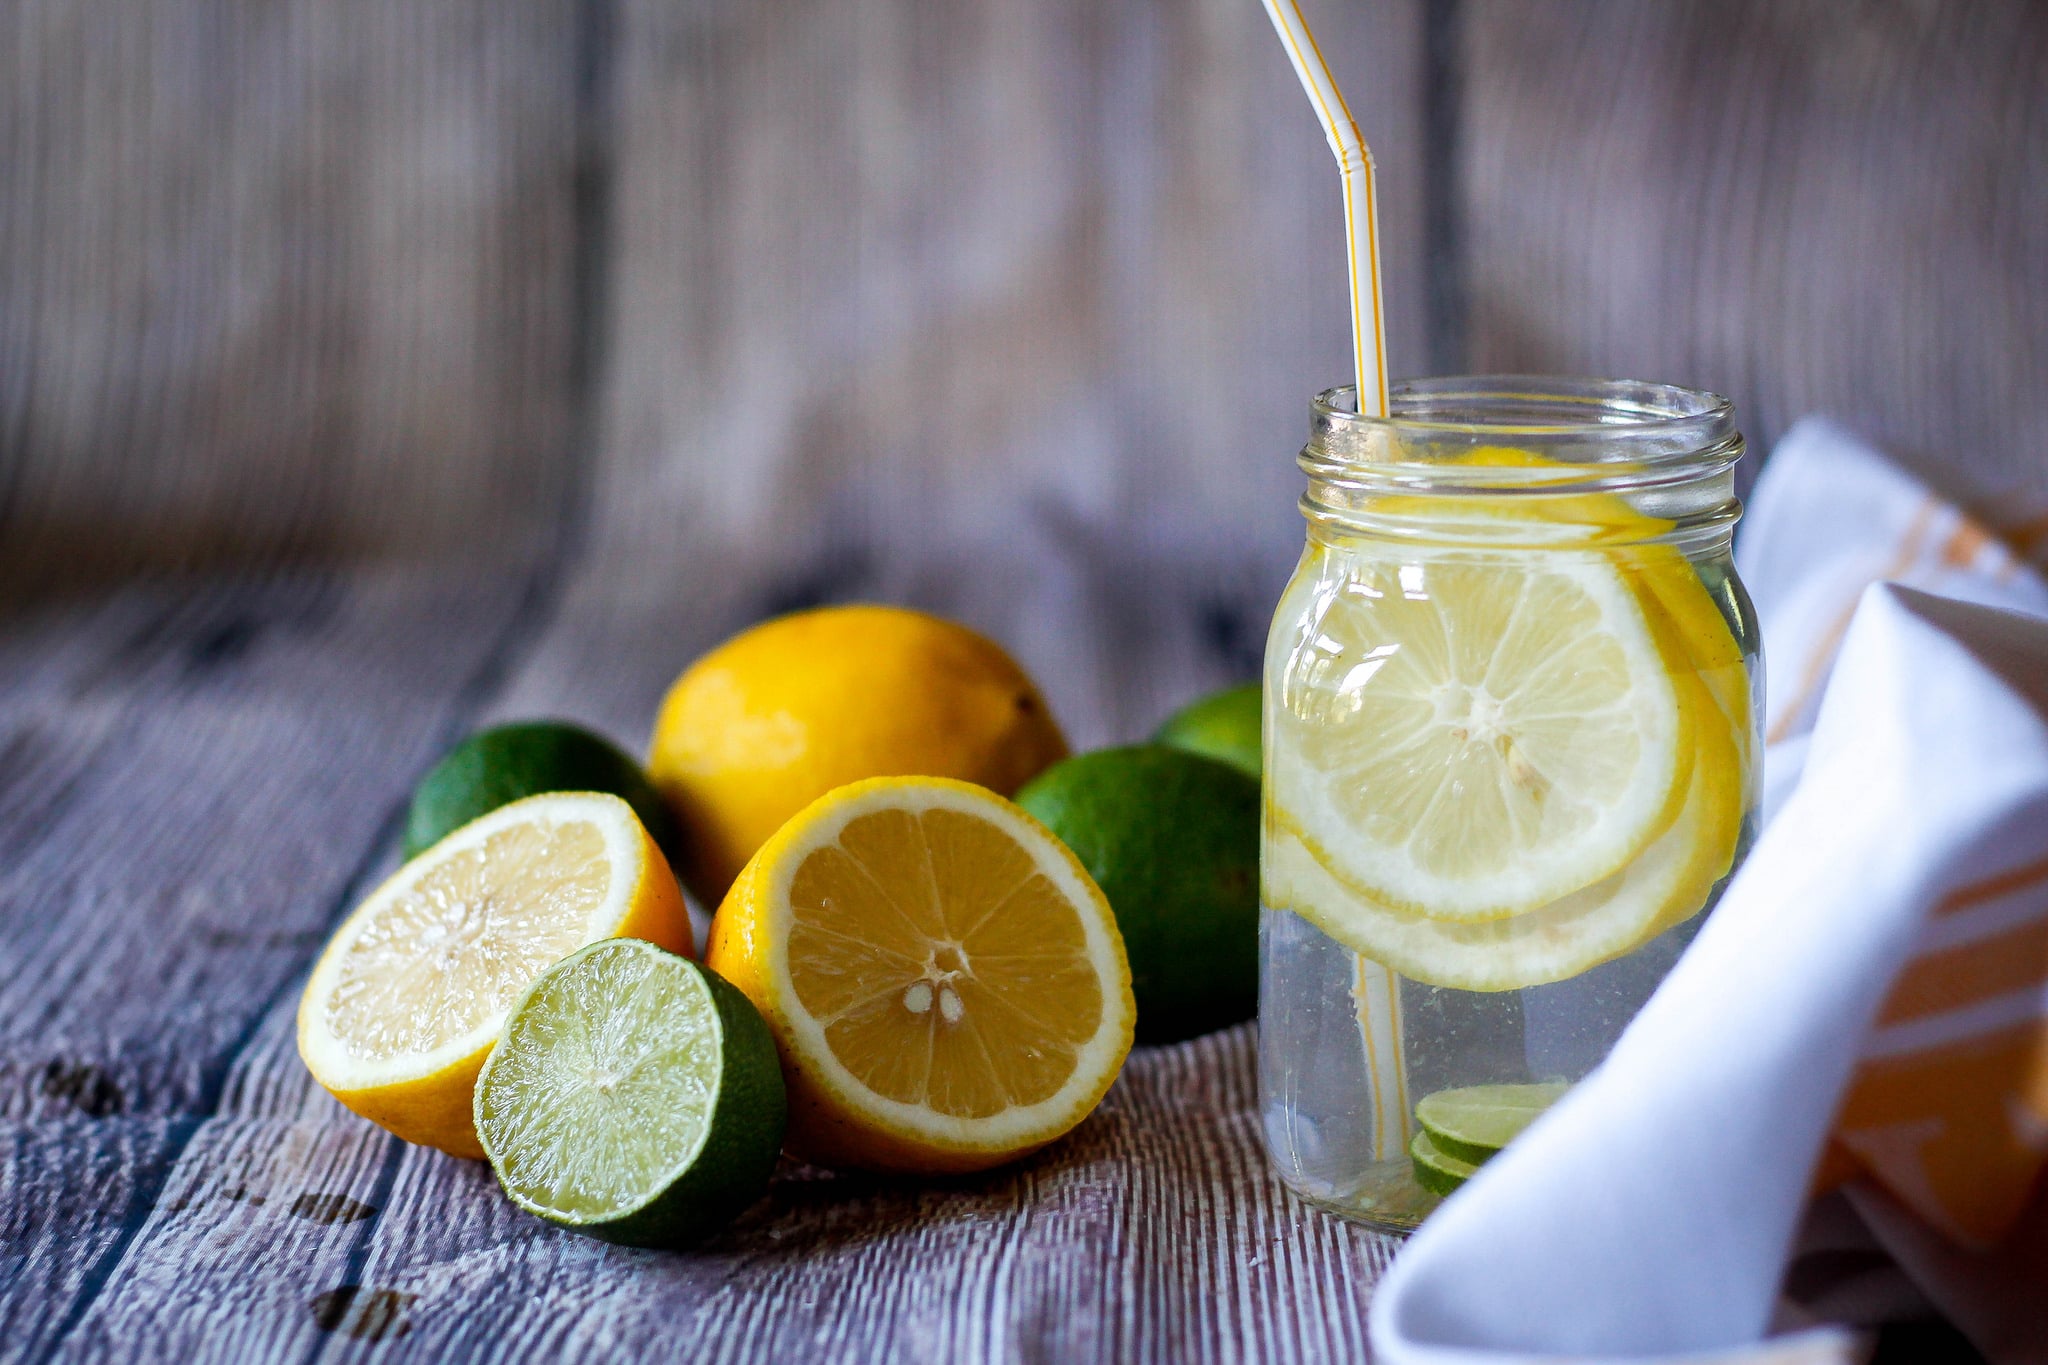 Вода с лимон на тощак. Вода с лимоном. Стакан воды с лимоном. Лимон. Теплая вода с лимоном.